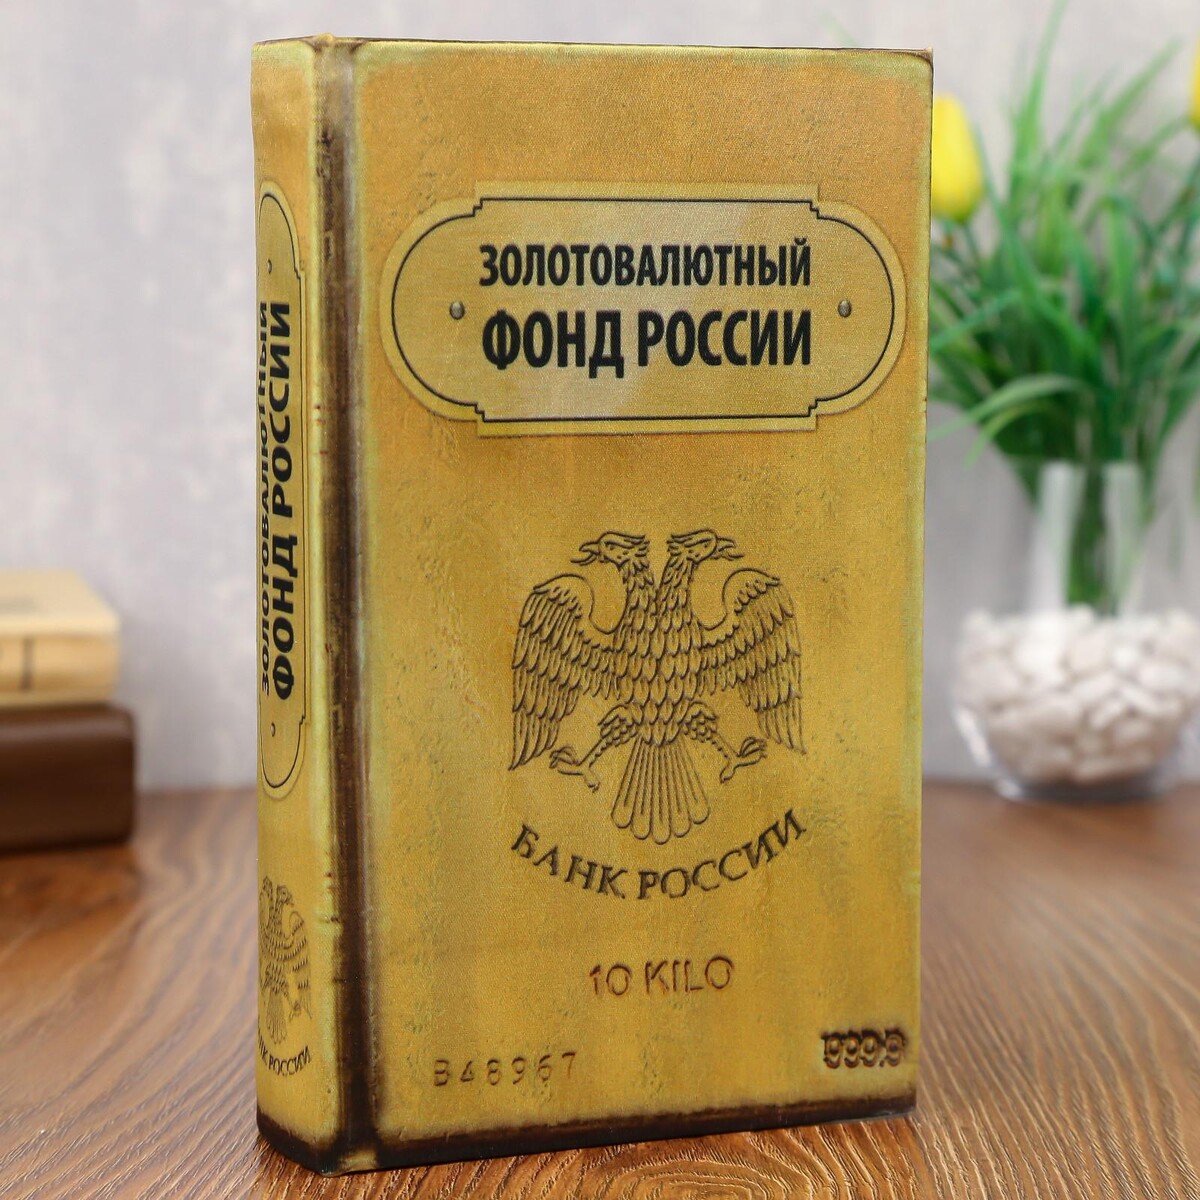 Сейф дерево книга золотовалютный фонд россии 21*13*5 см холдингизация агробизнеса россии